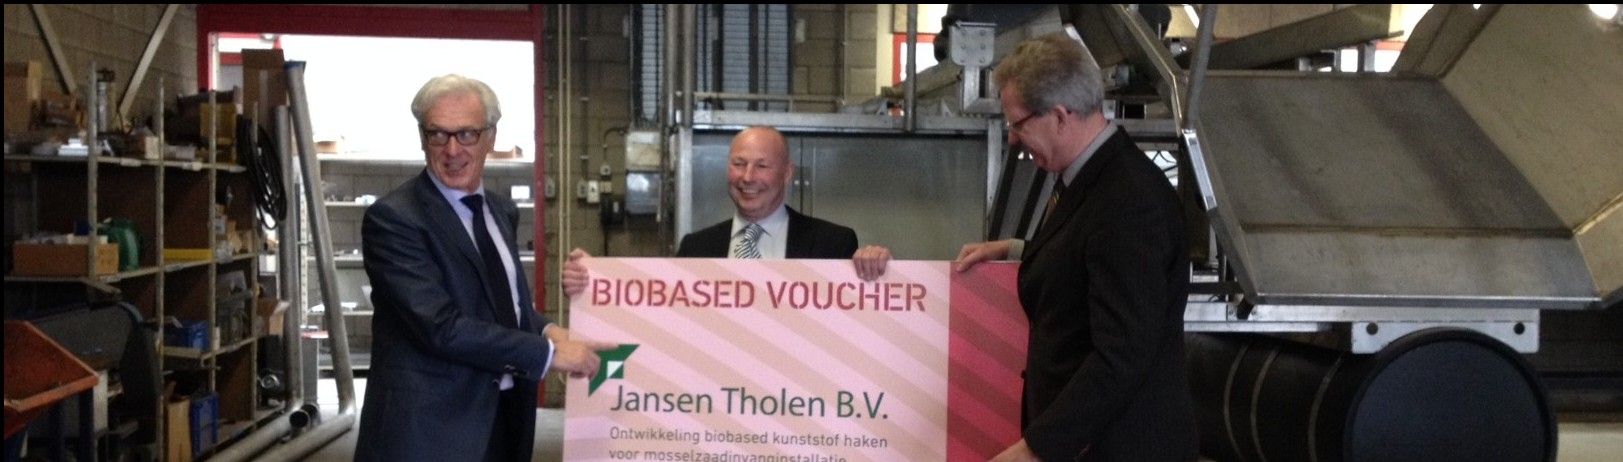 Uitreiking Biobased Voucher